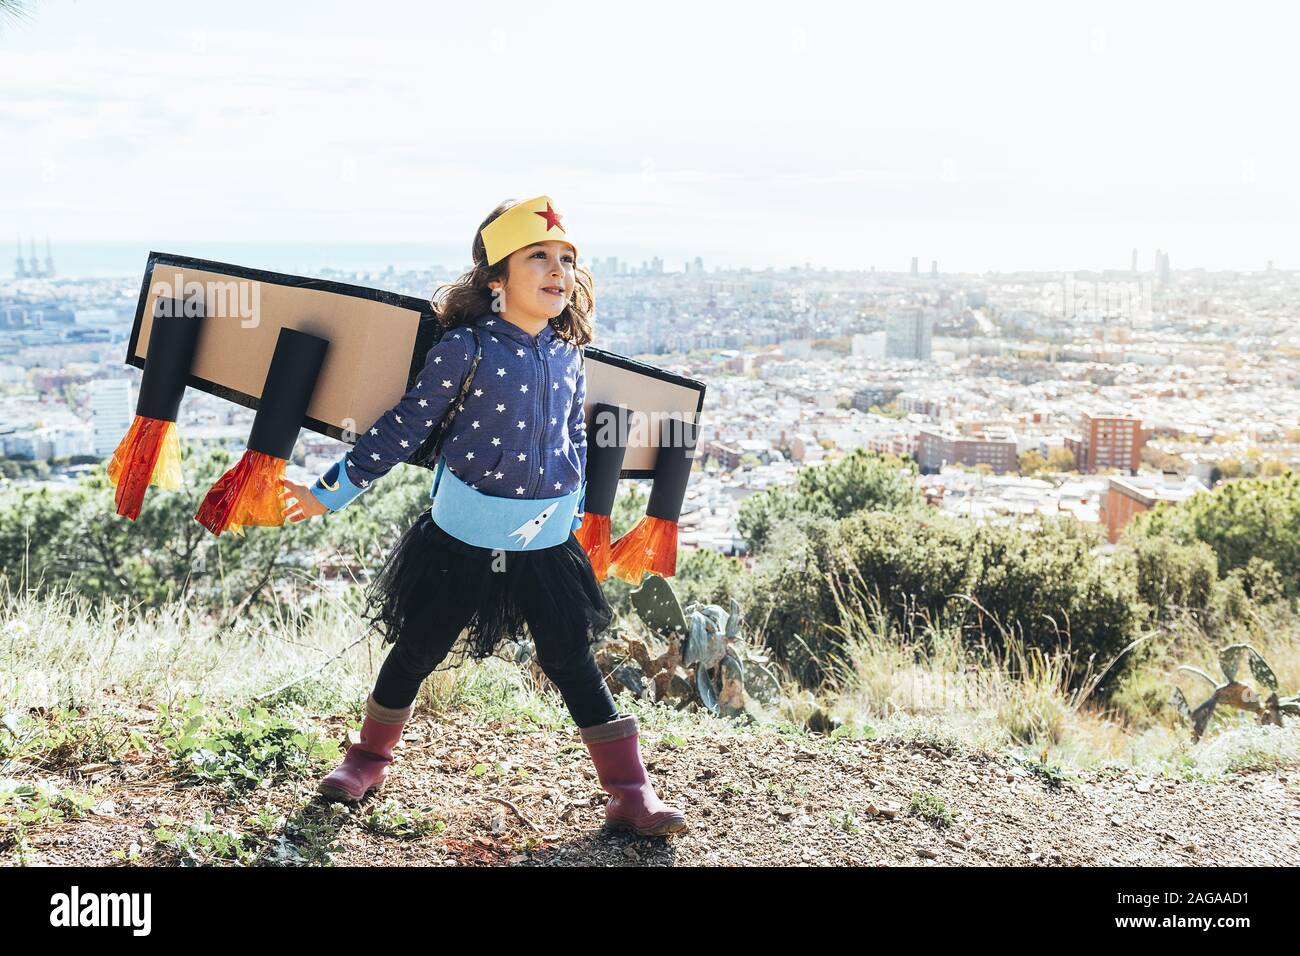 Lustige kleine Kind Mädchen fliegen als Superheld mit hausgemachten Kostüm und Karton Flugzeug Flügel vor einem Stadtbild, Phantasie und Mädchen verkleidet Stockfoto